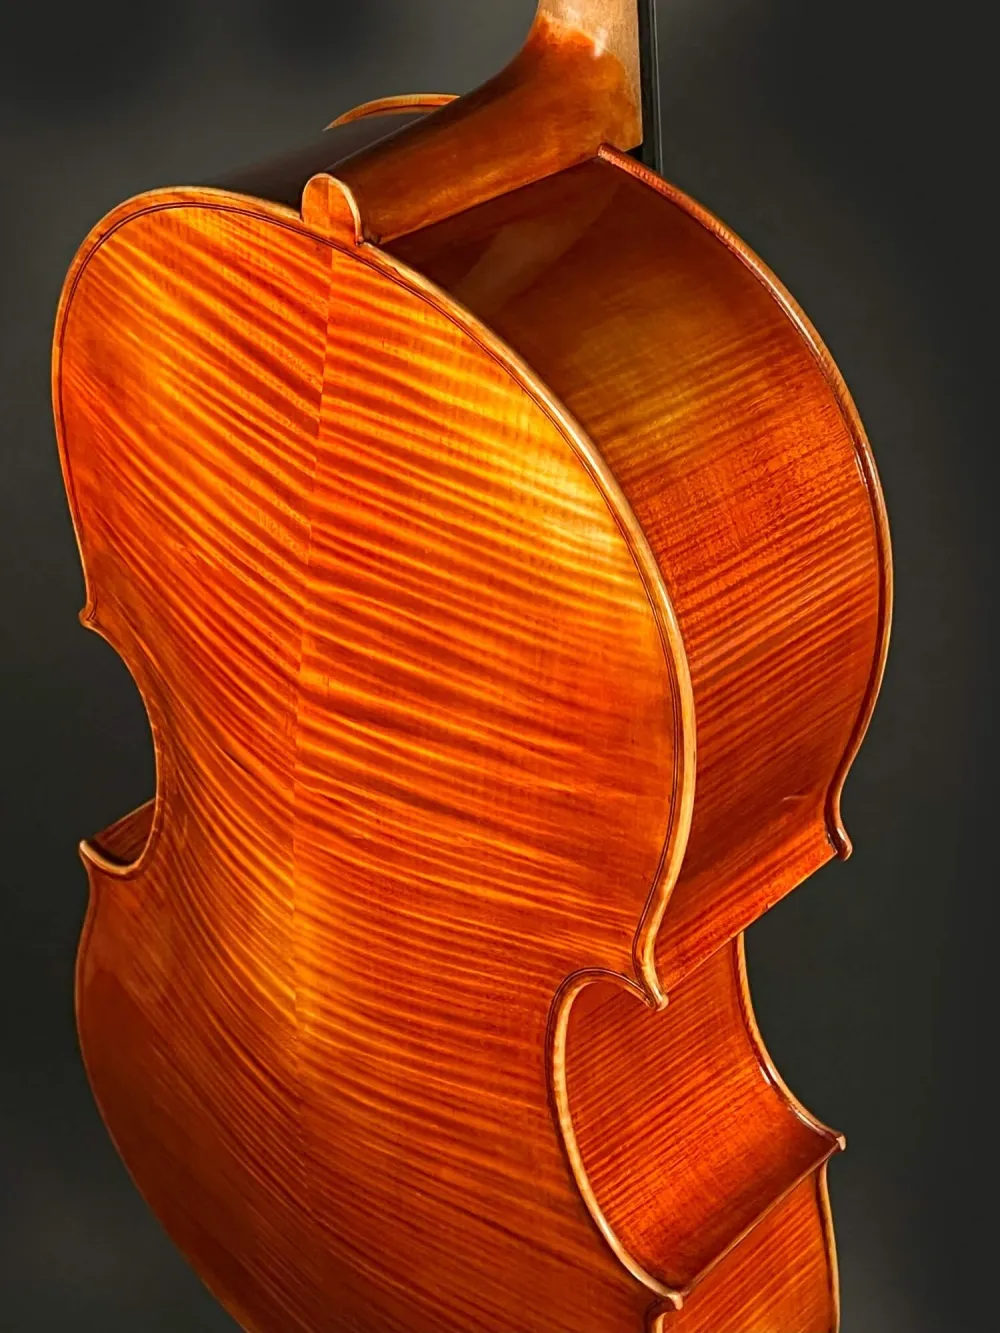 Halsansatz-Boden-Detailansicht einer Simon Joseph Montagnana Cello (Violoncello) Handarbeit 2020